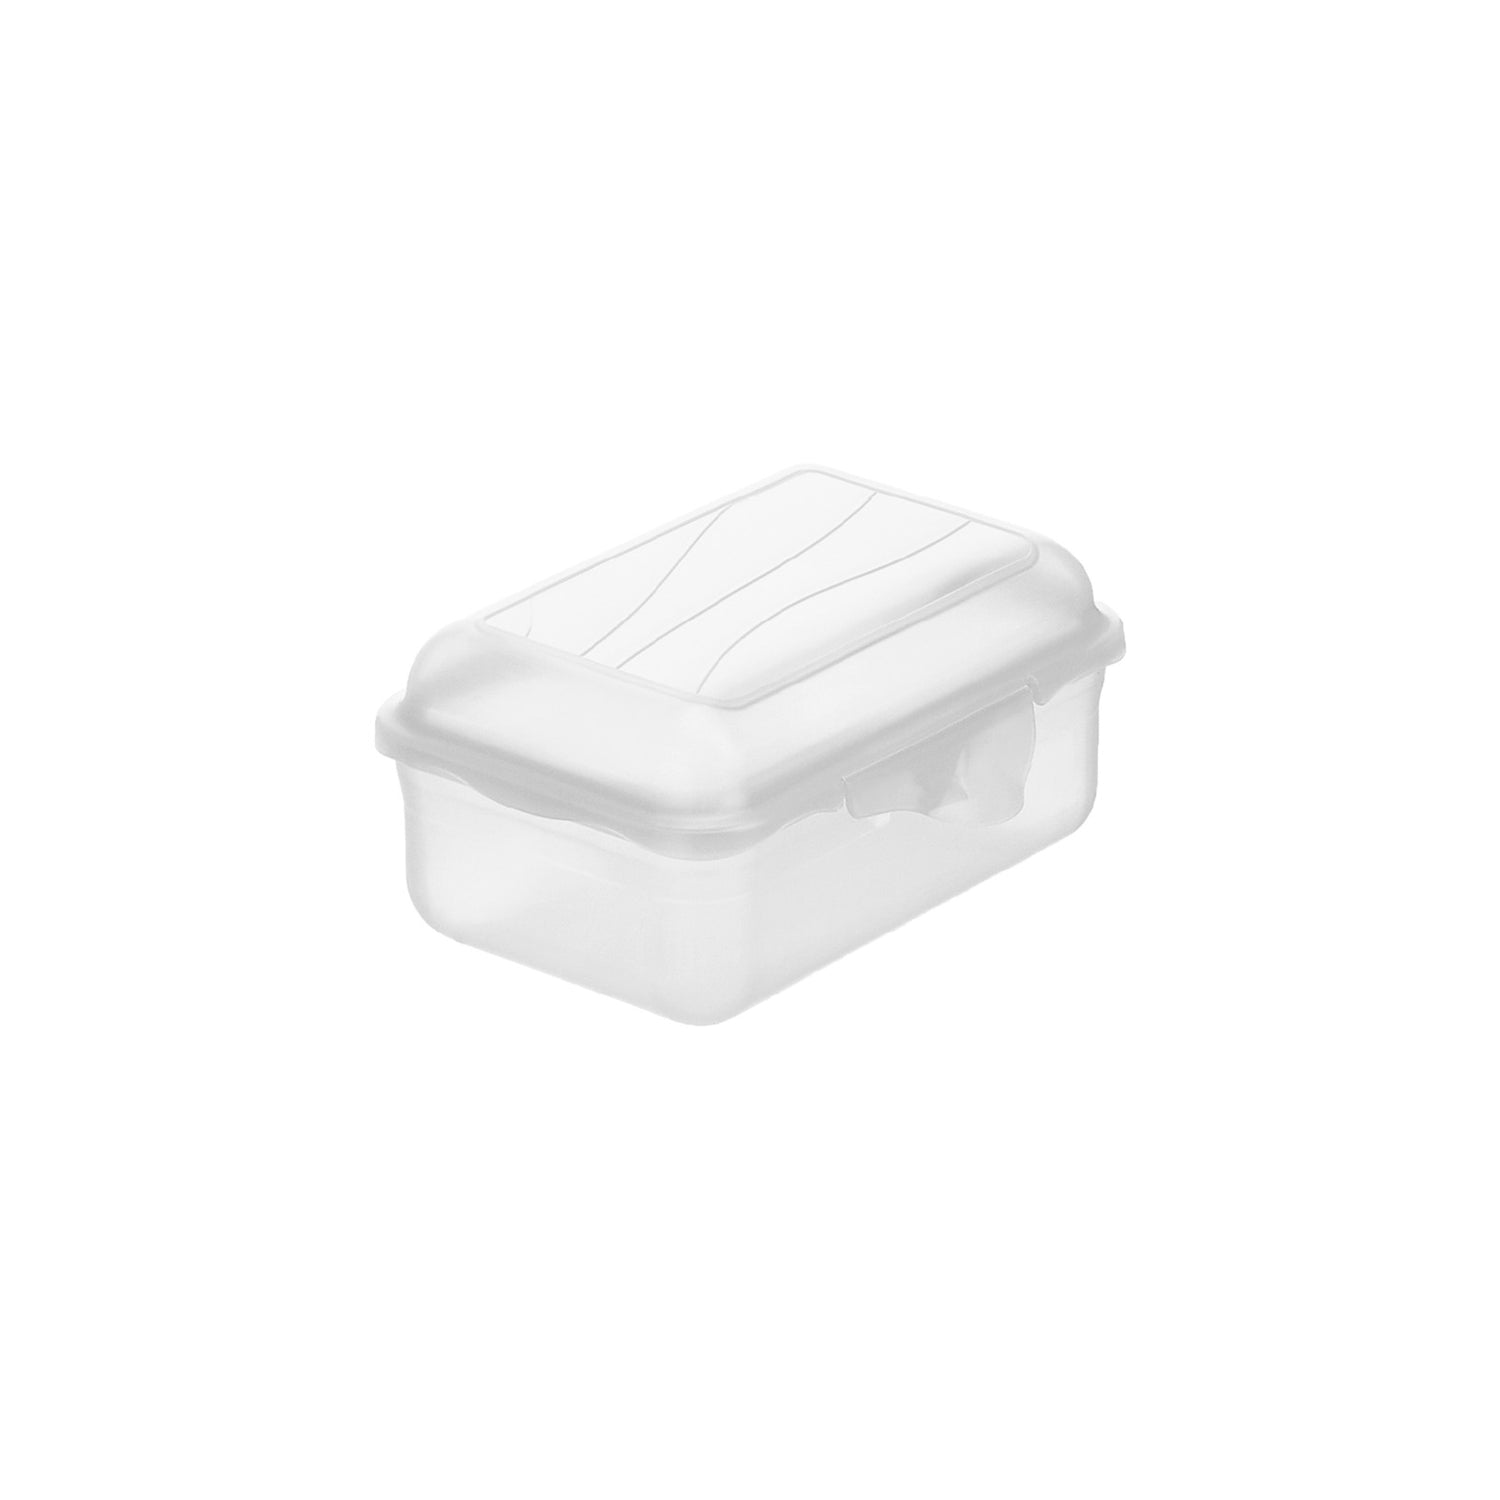 Lunch Box with Clip Closure 0.4L l FUN